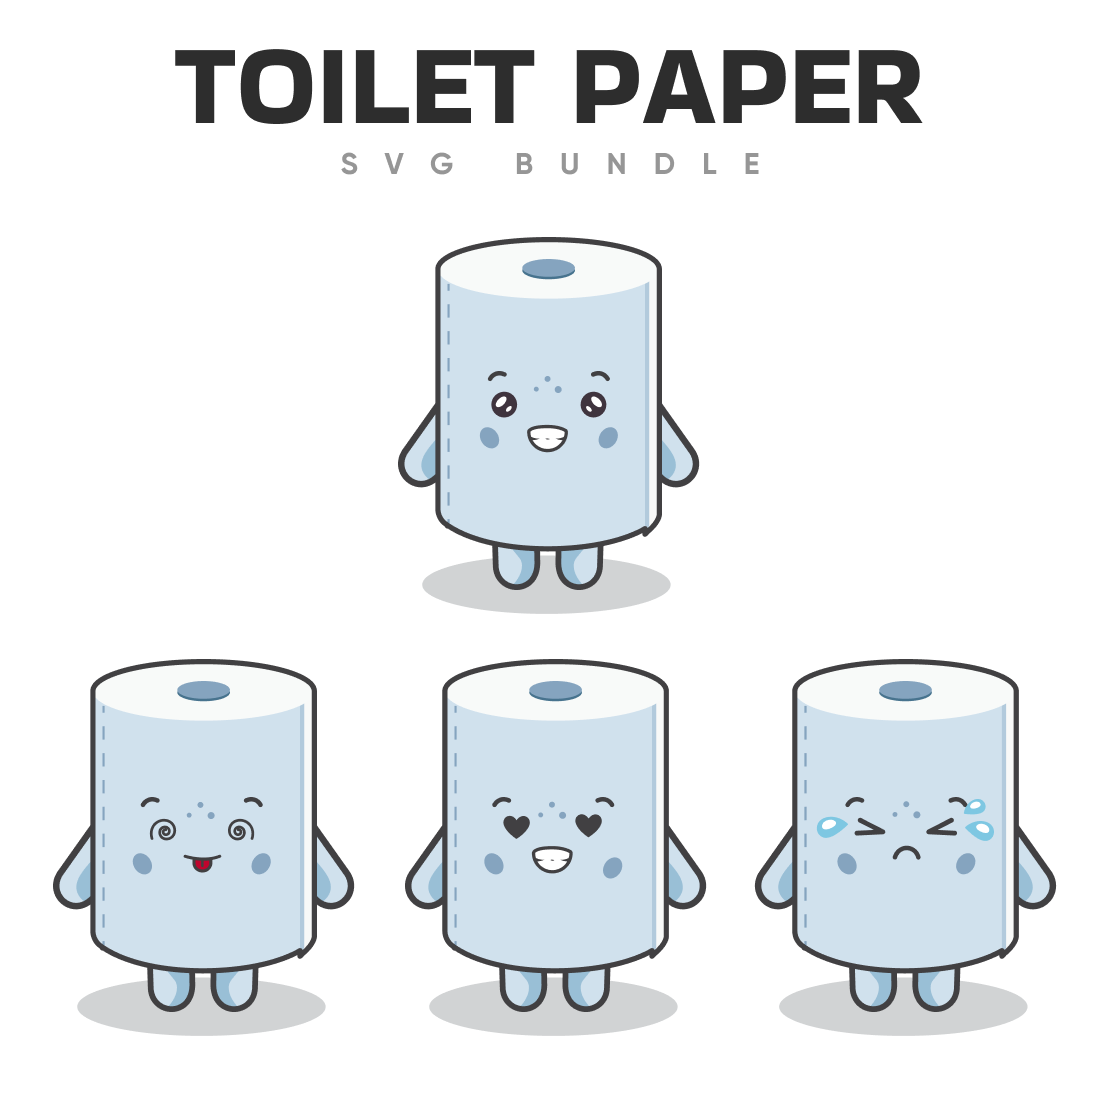 Toilet paper svg bundle.